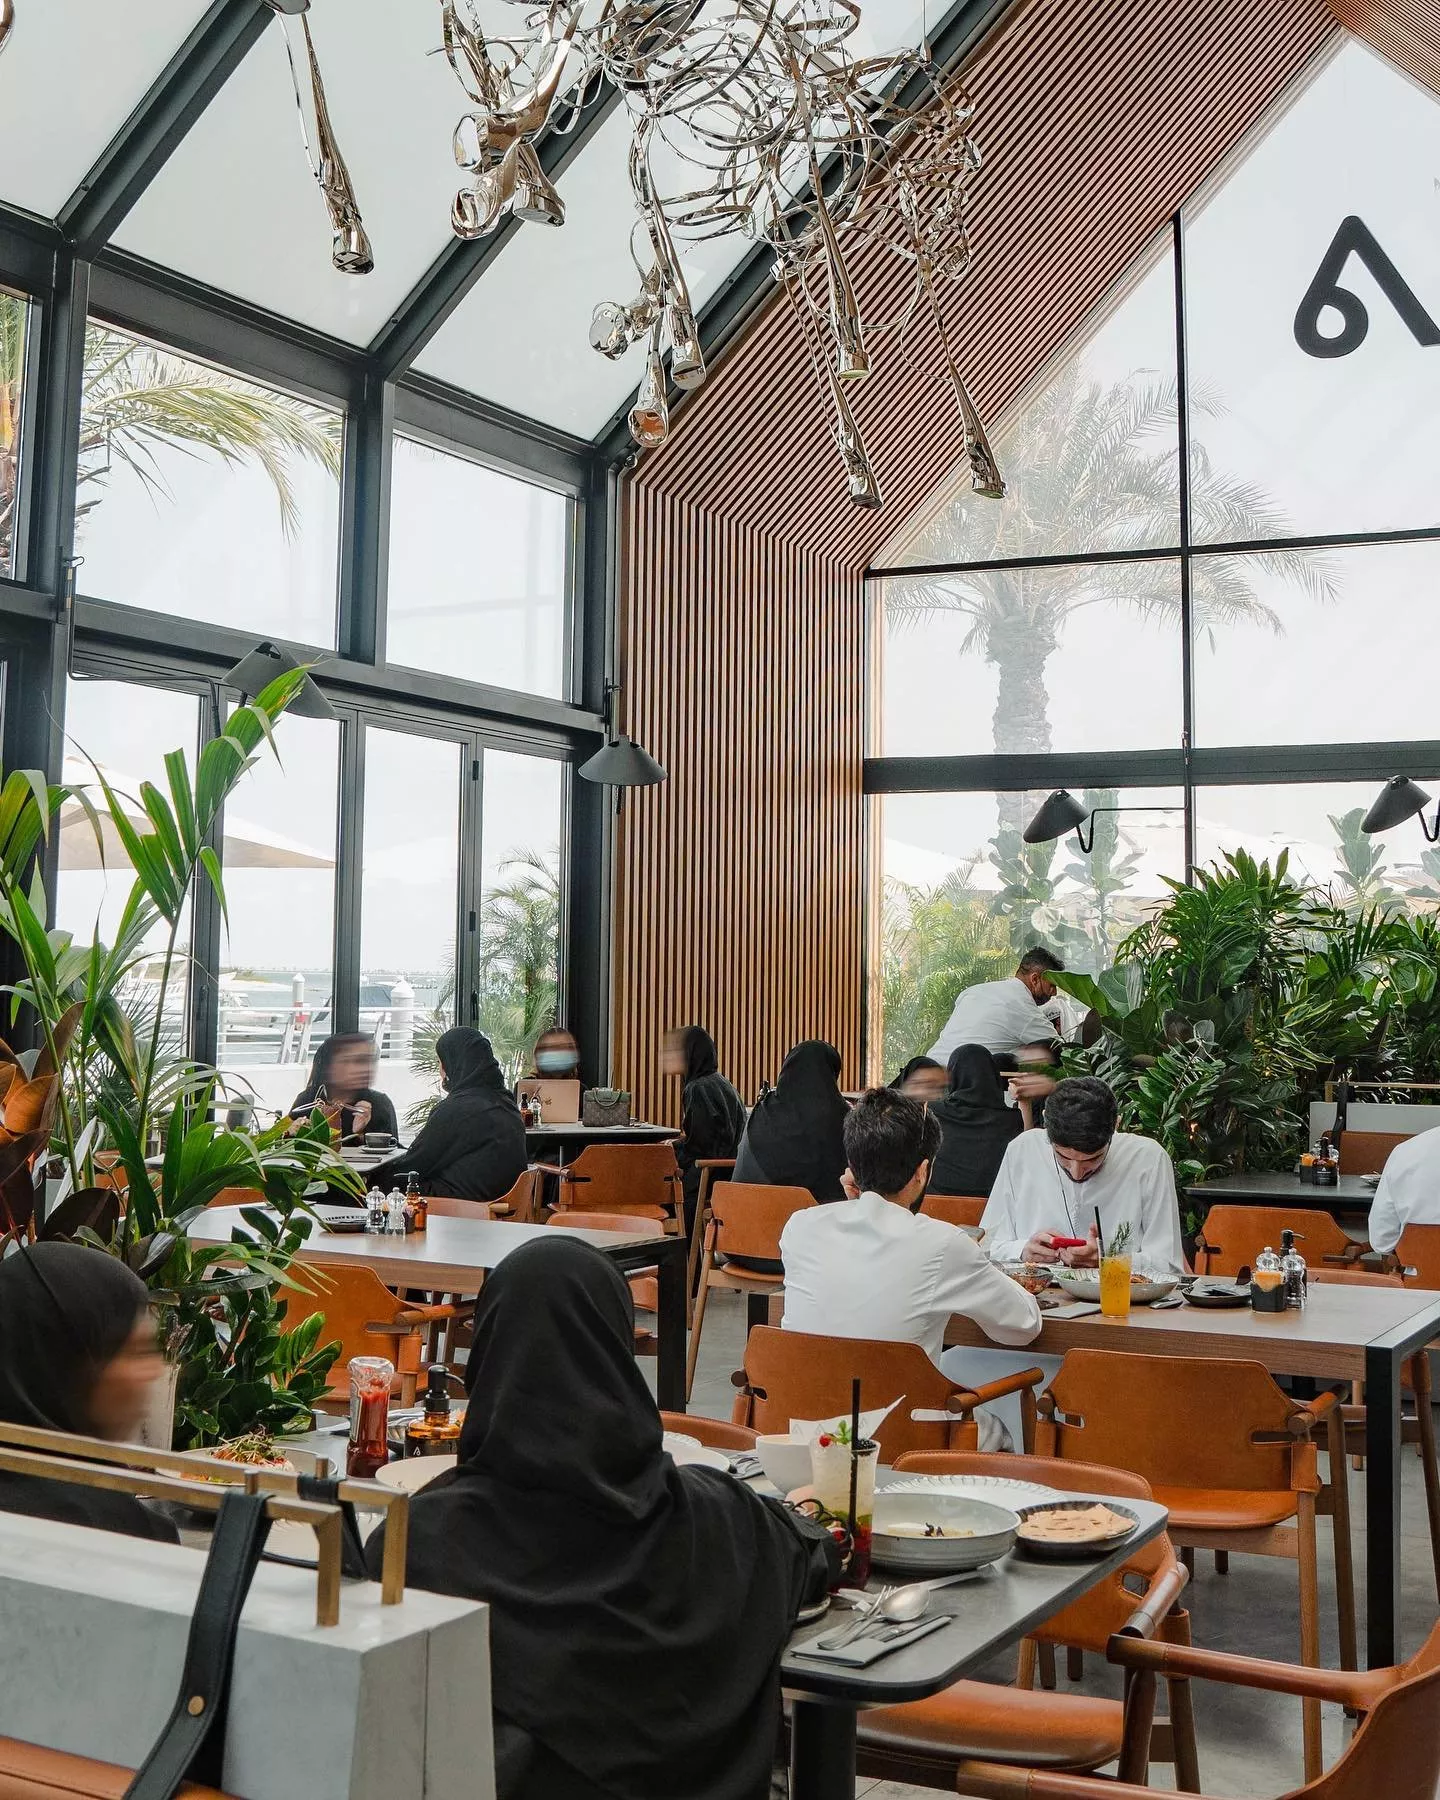 أفضل 10 محلات تقدم القهوة المثلجة في الإمارات